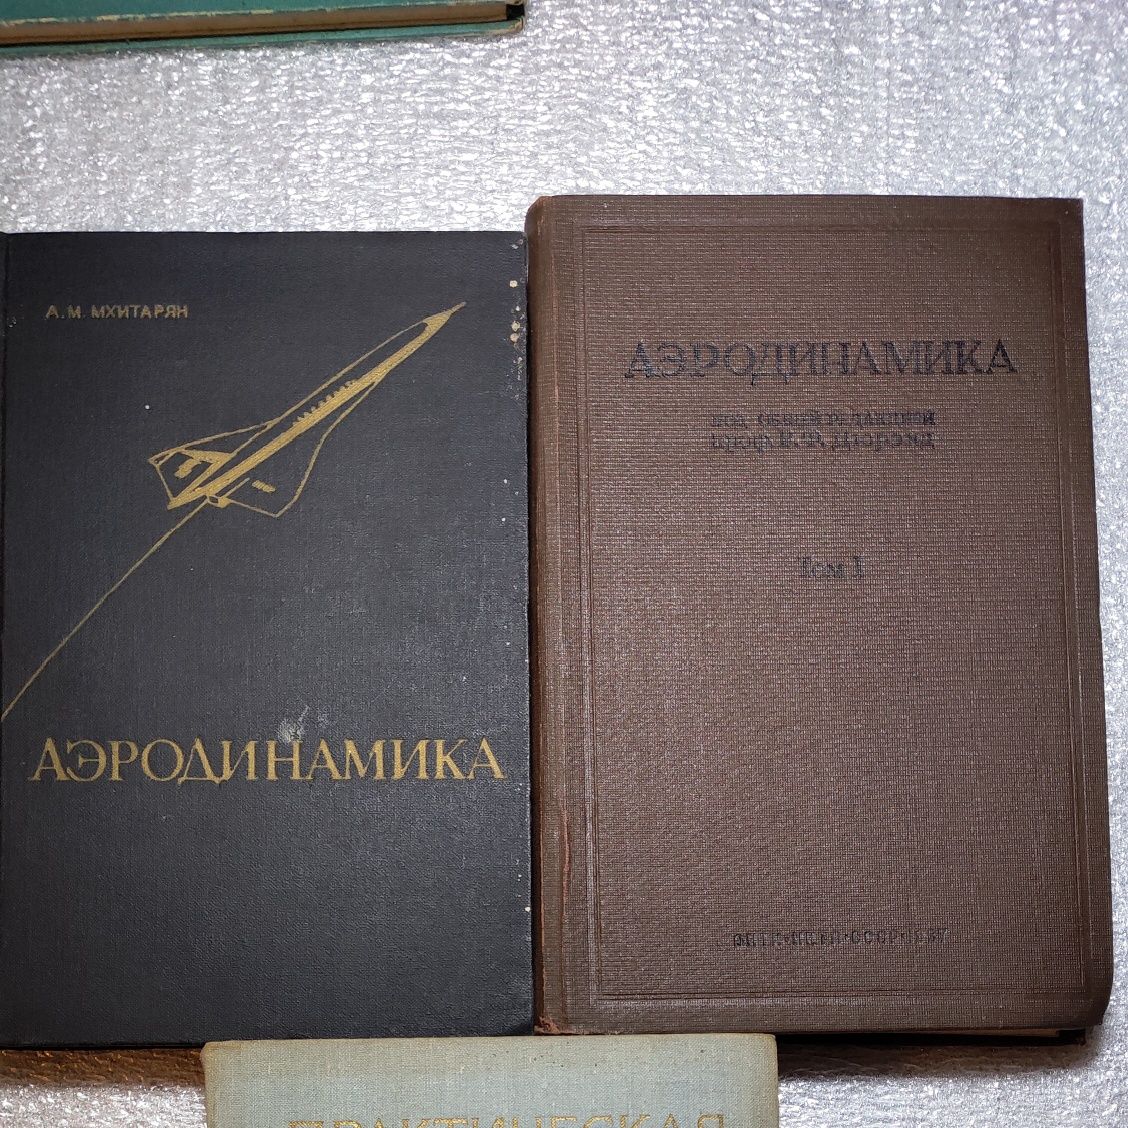 Книги аэродинамика и авиационная литература